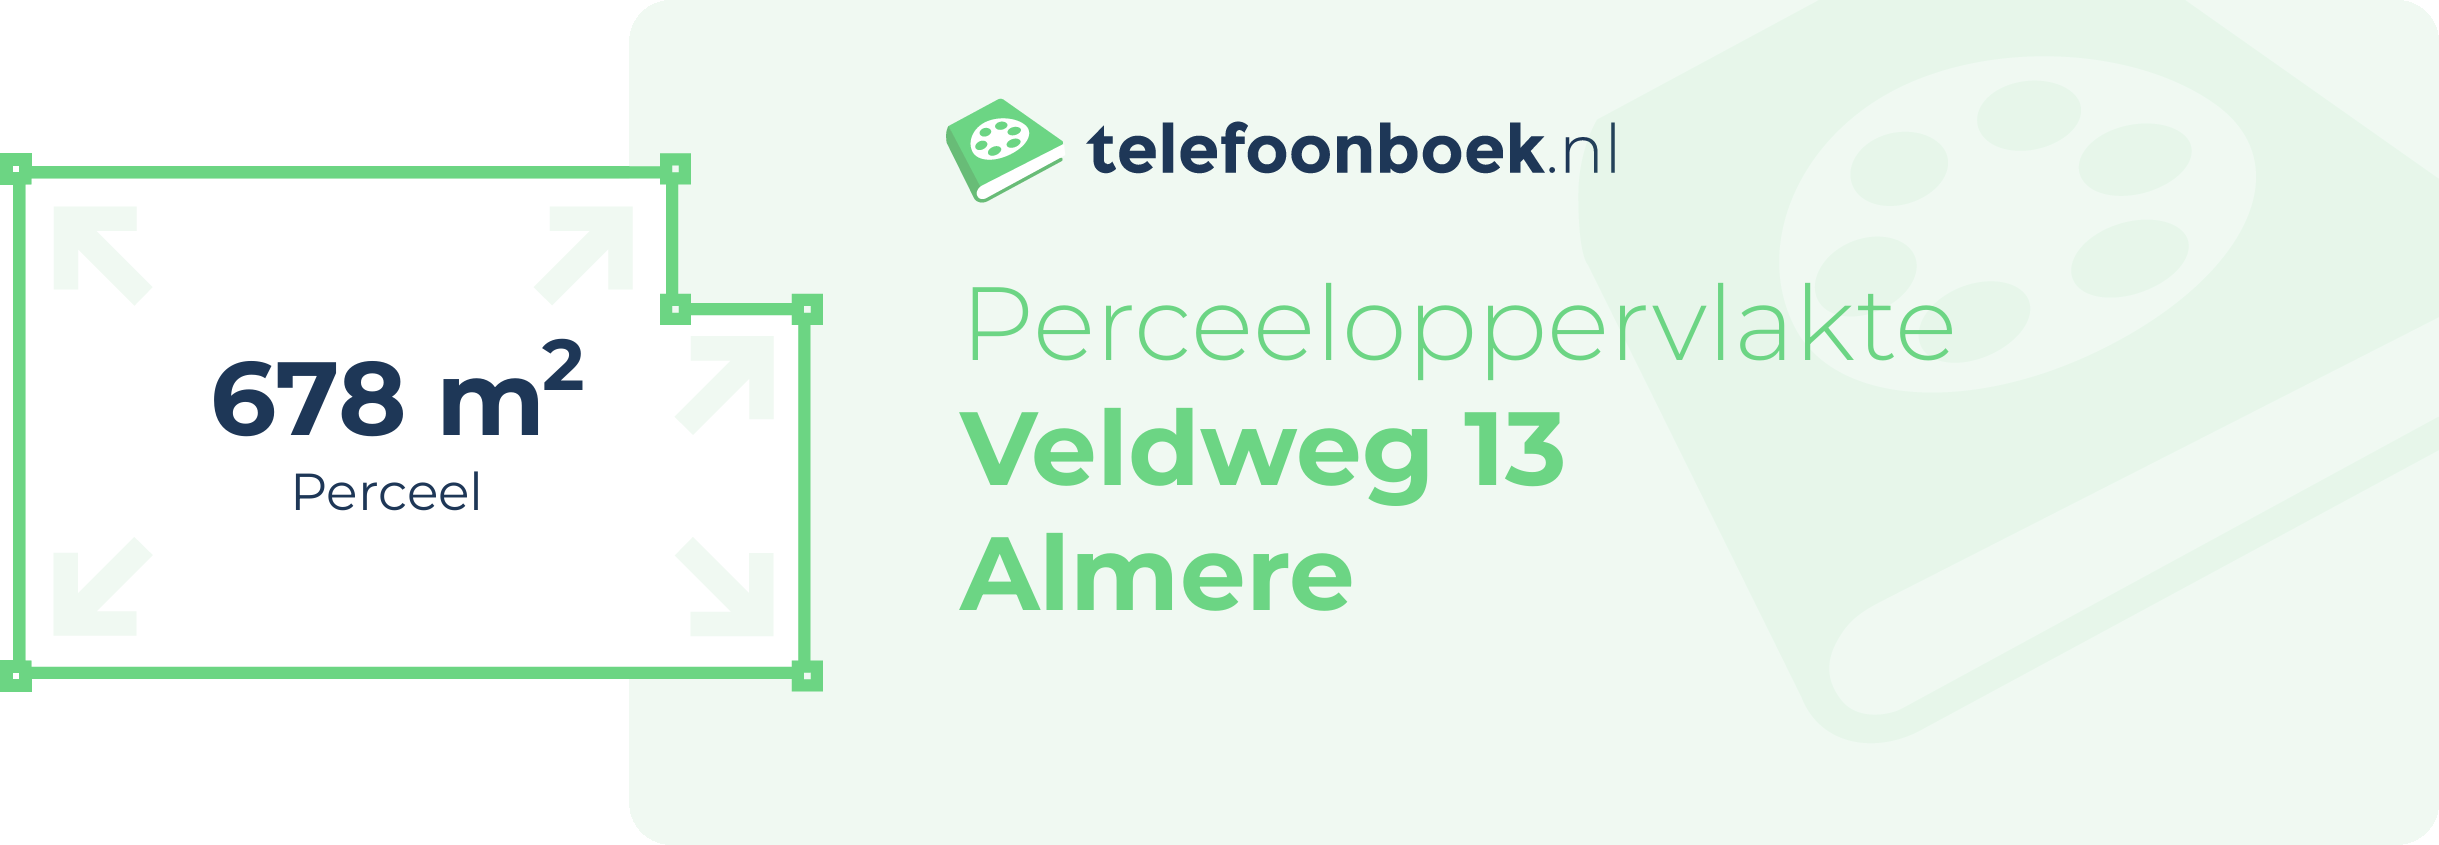 Perceeloppervlakte Veldweg 13 Almere